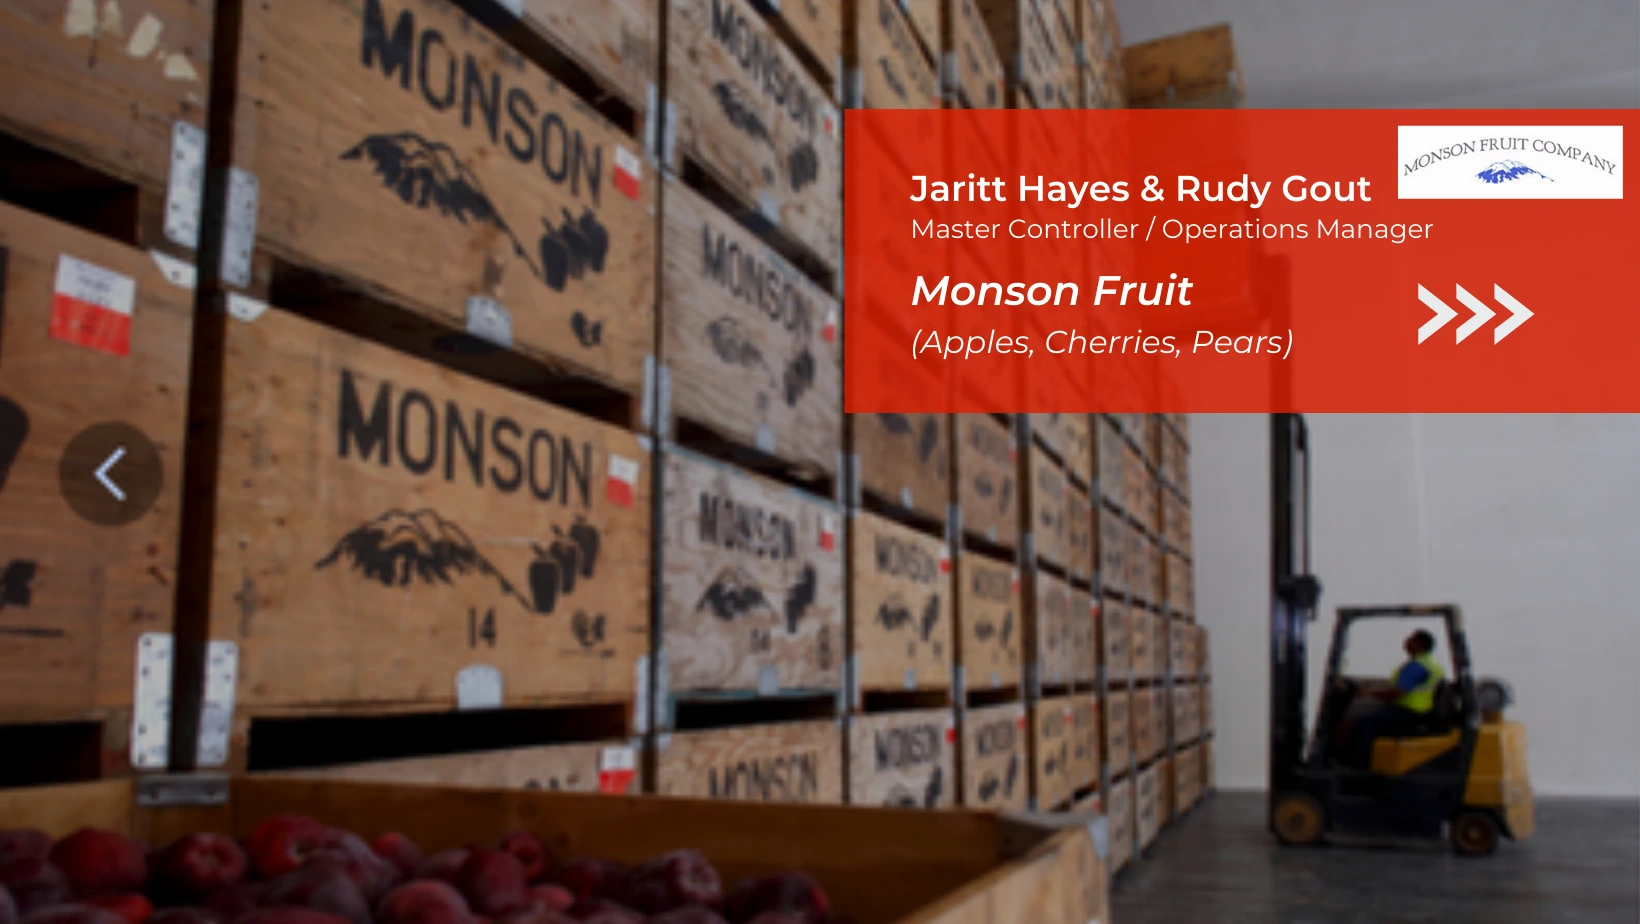 Monson Fruit case study